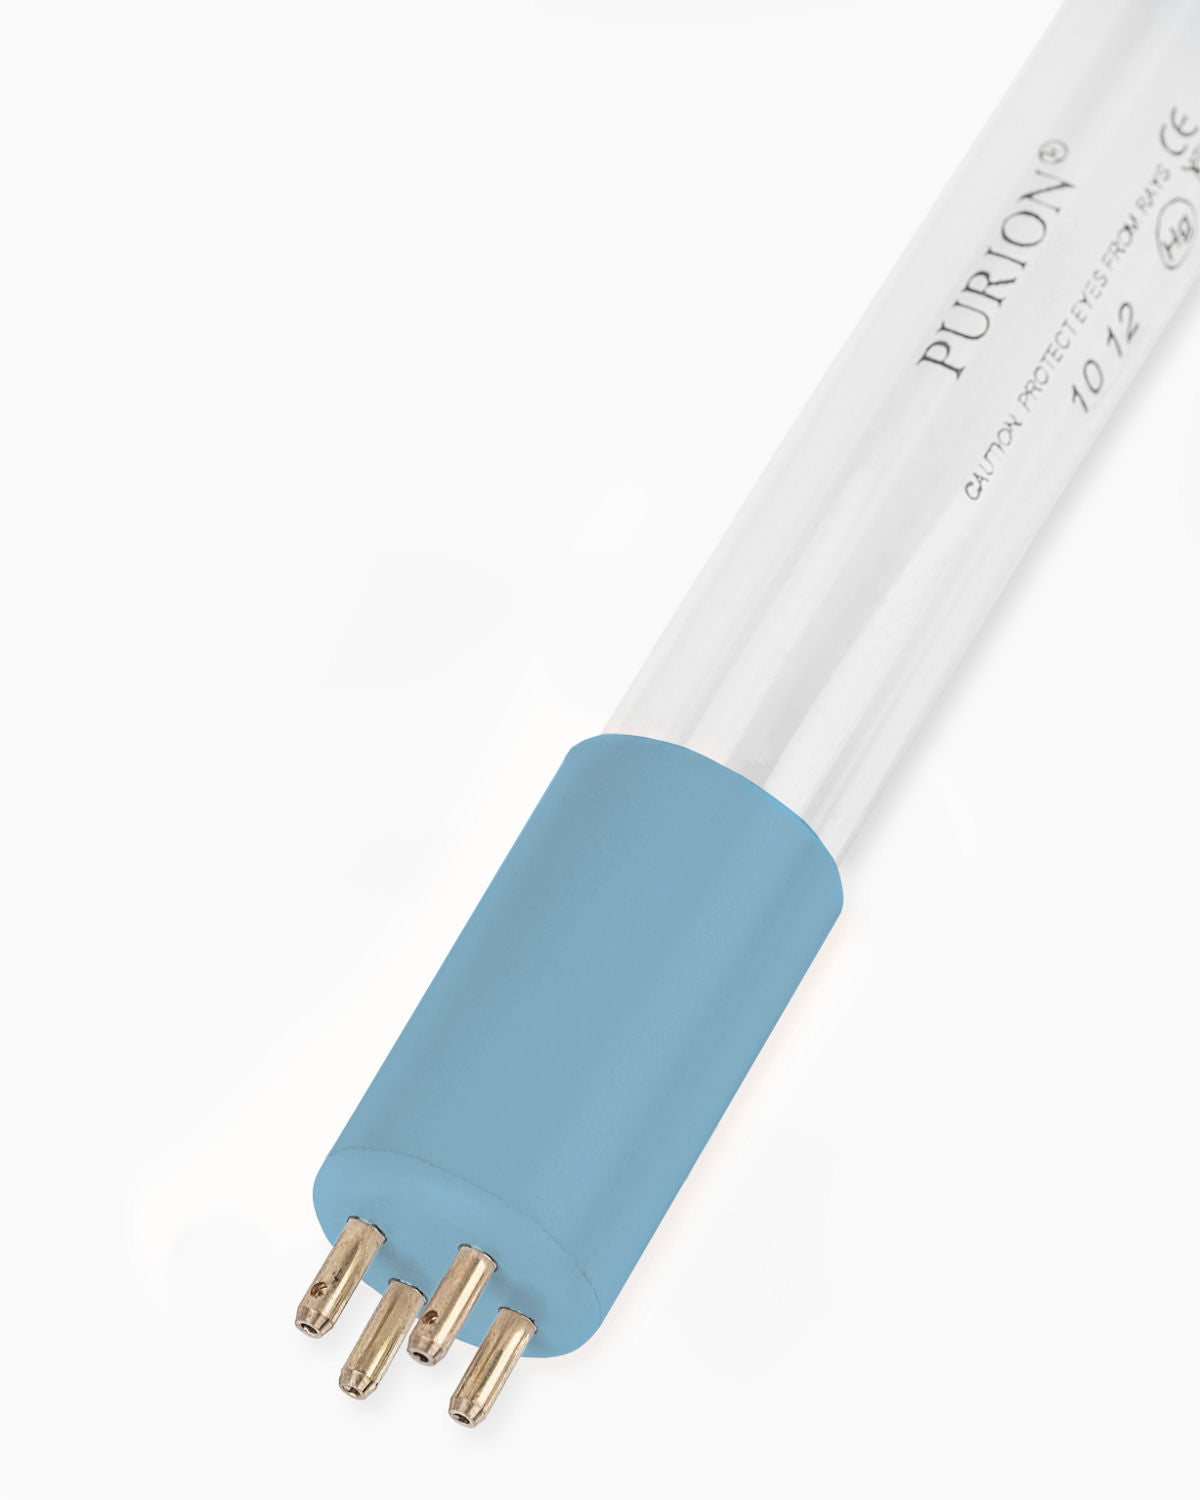 Eine PURION 2500 H Basic Blaulichtröhre auf weißem Hintergrund, zur UV-C-Desinfektion, hergestellt von der PURION GmbH.